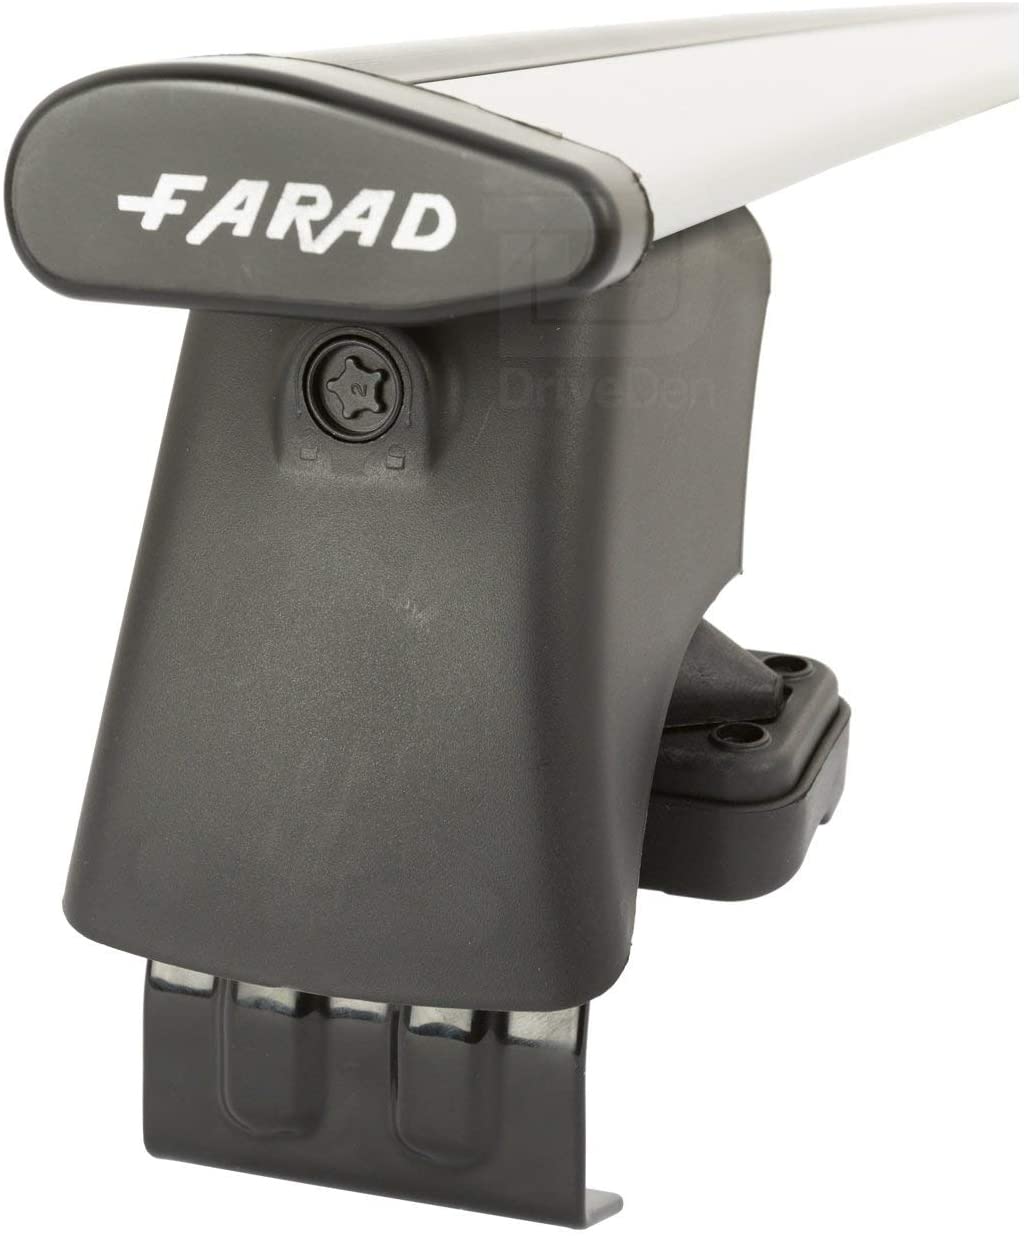 FARAD-Kit H2 per barre portatutto - Toyota Aygo 2005-2013 (senza corrimano)